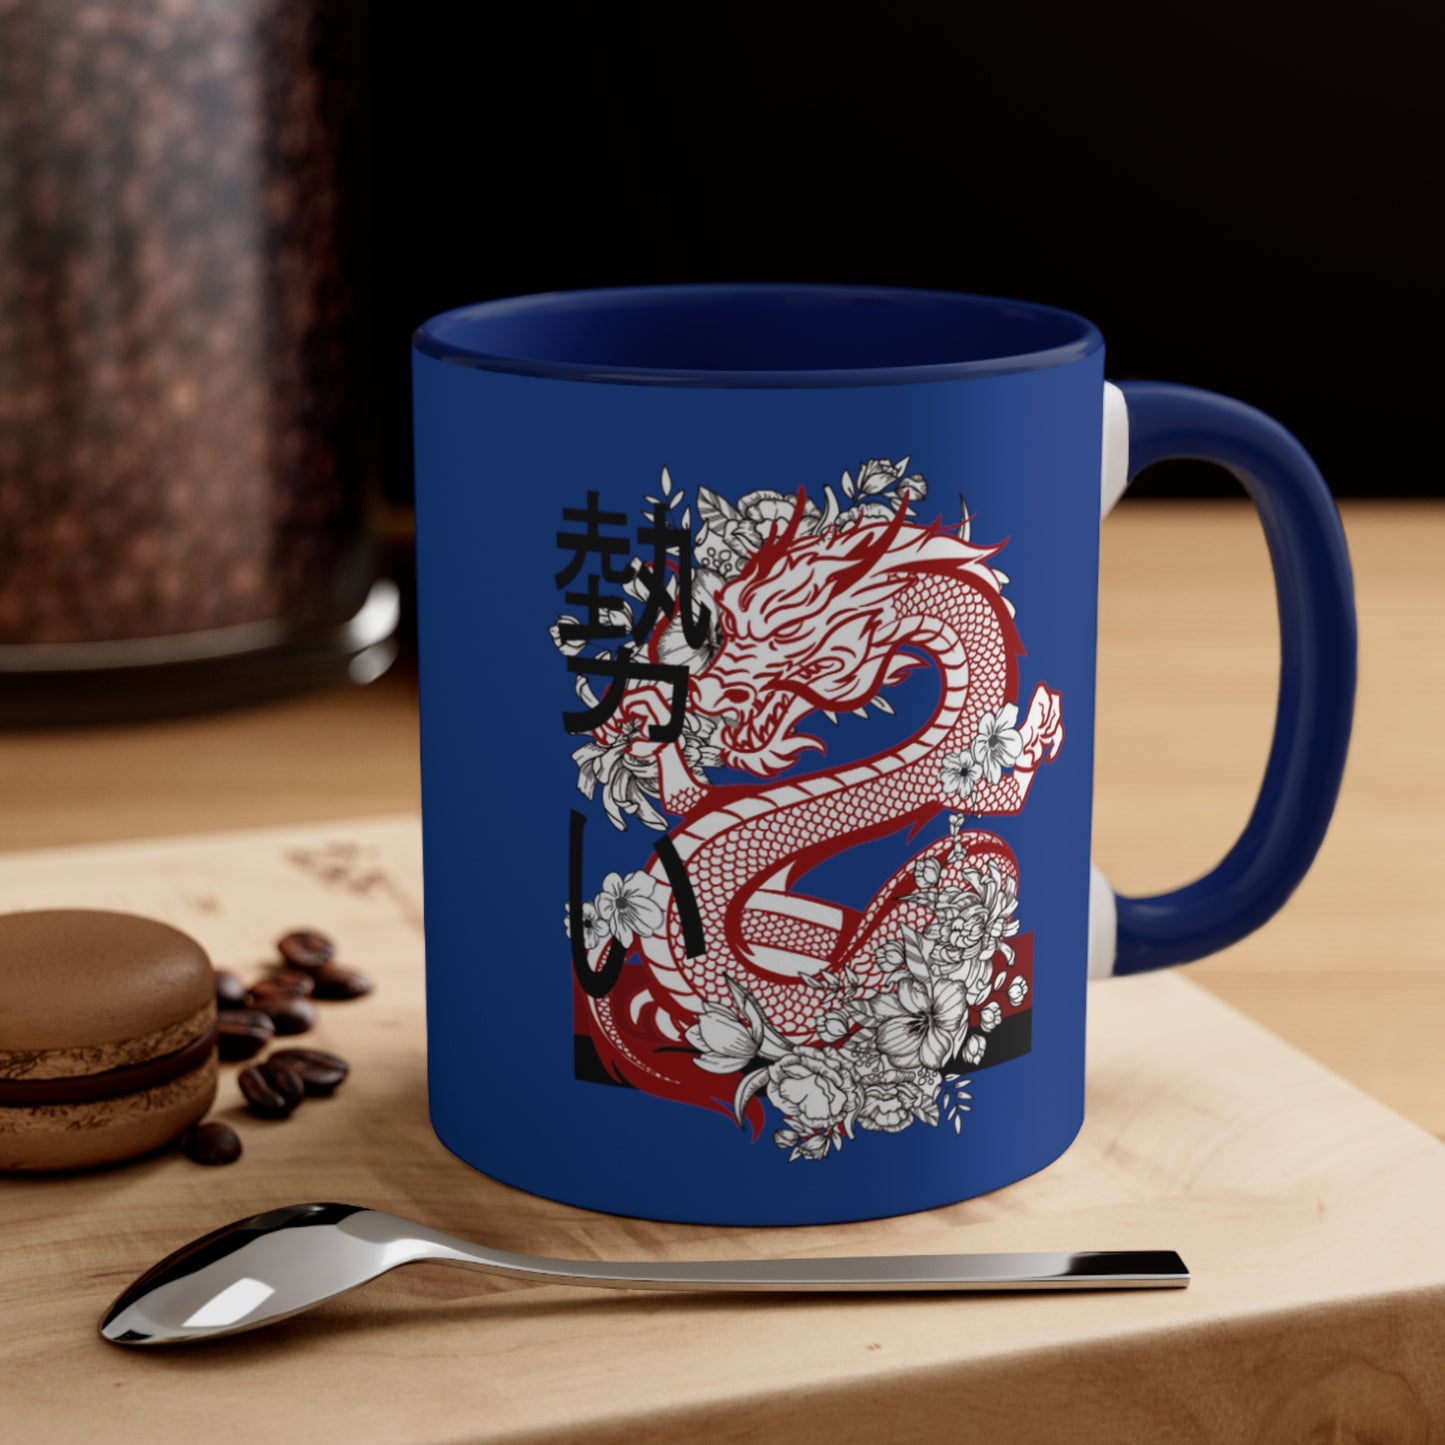 Accent Coffee Mug, 11oz: Dragons Dark Blue